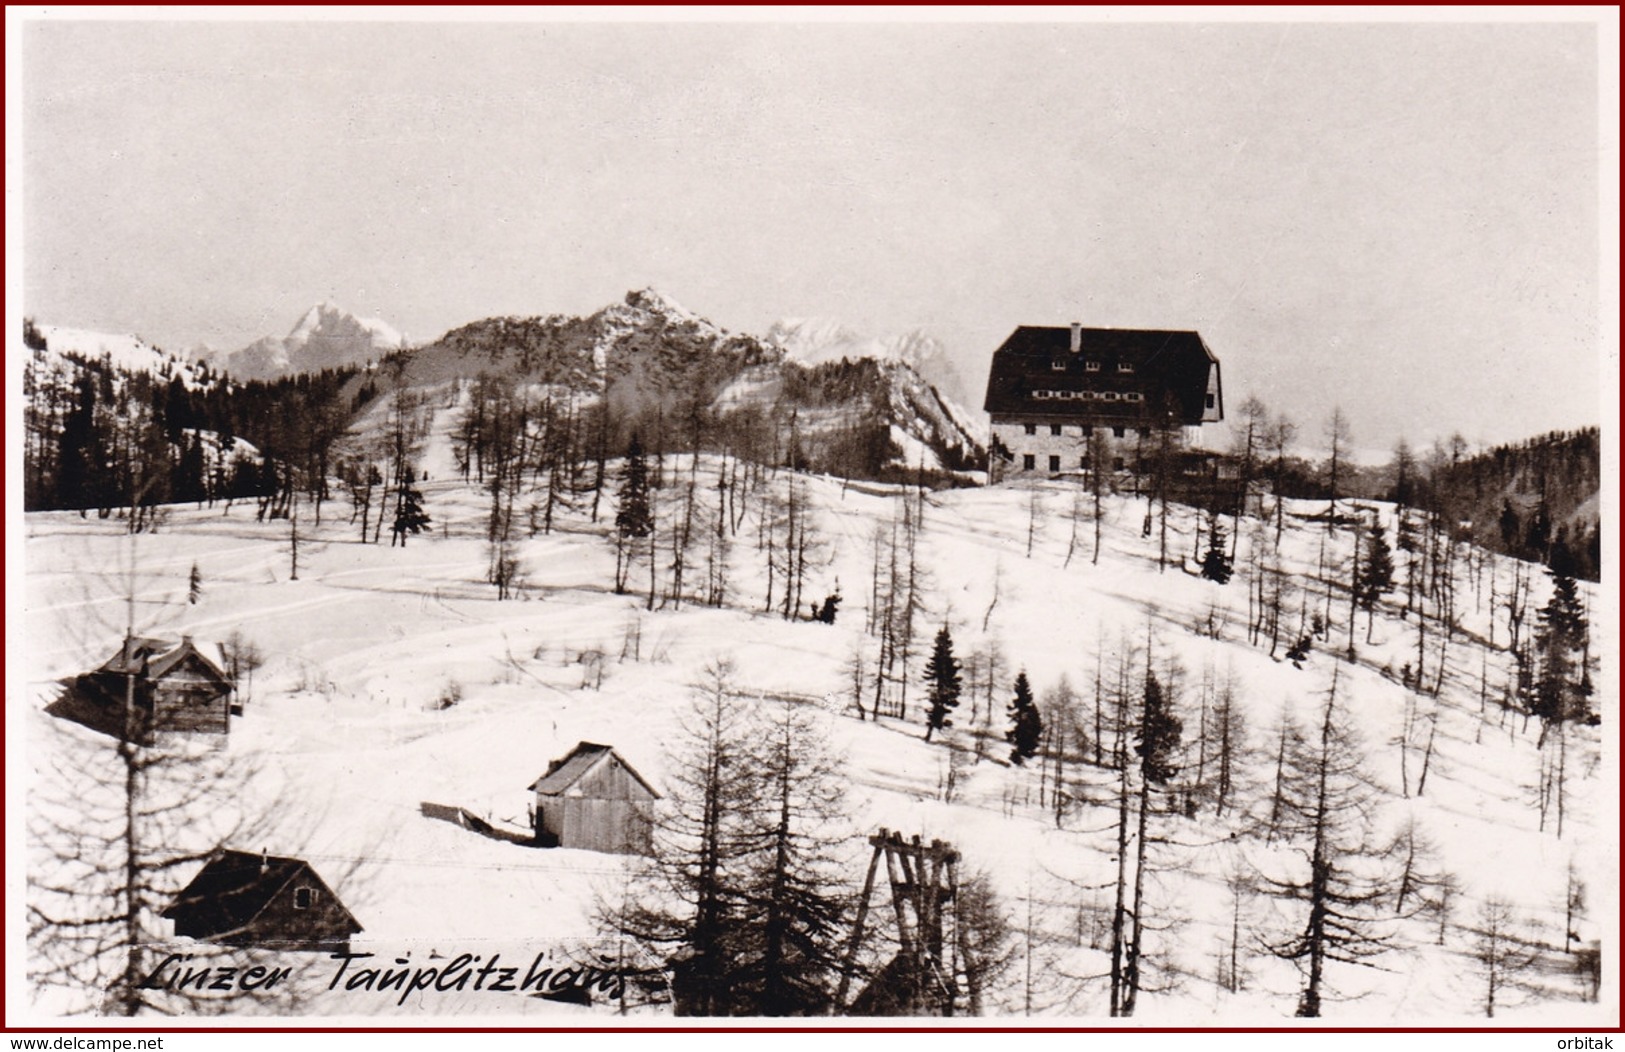 Linzer Tauplitzhaus * Berghütte, Winter, Alpen * Österreich * AK2273 - Bad Mitterndorf